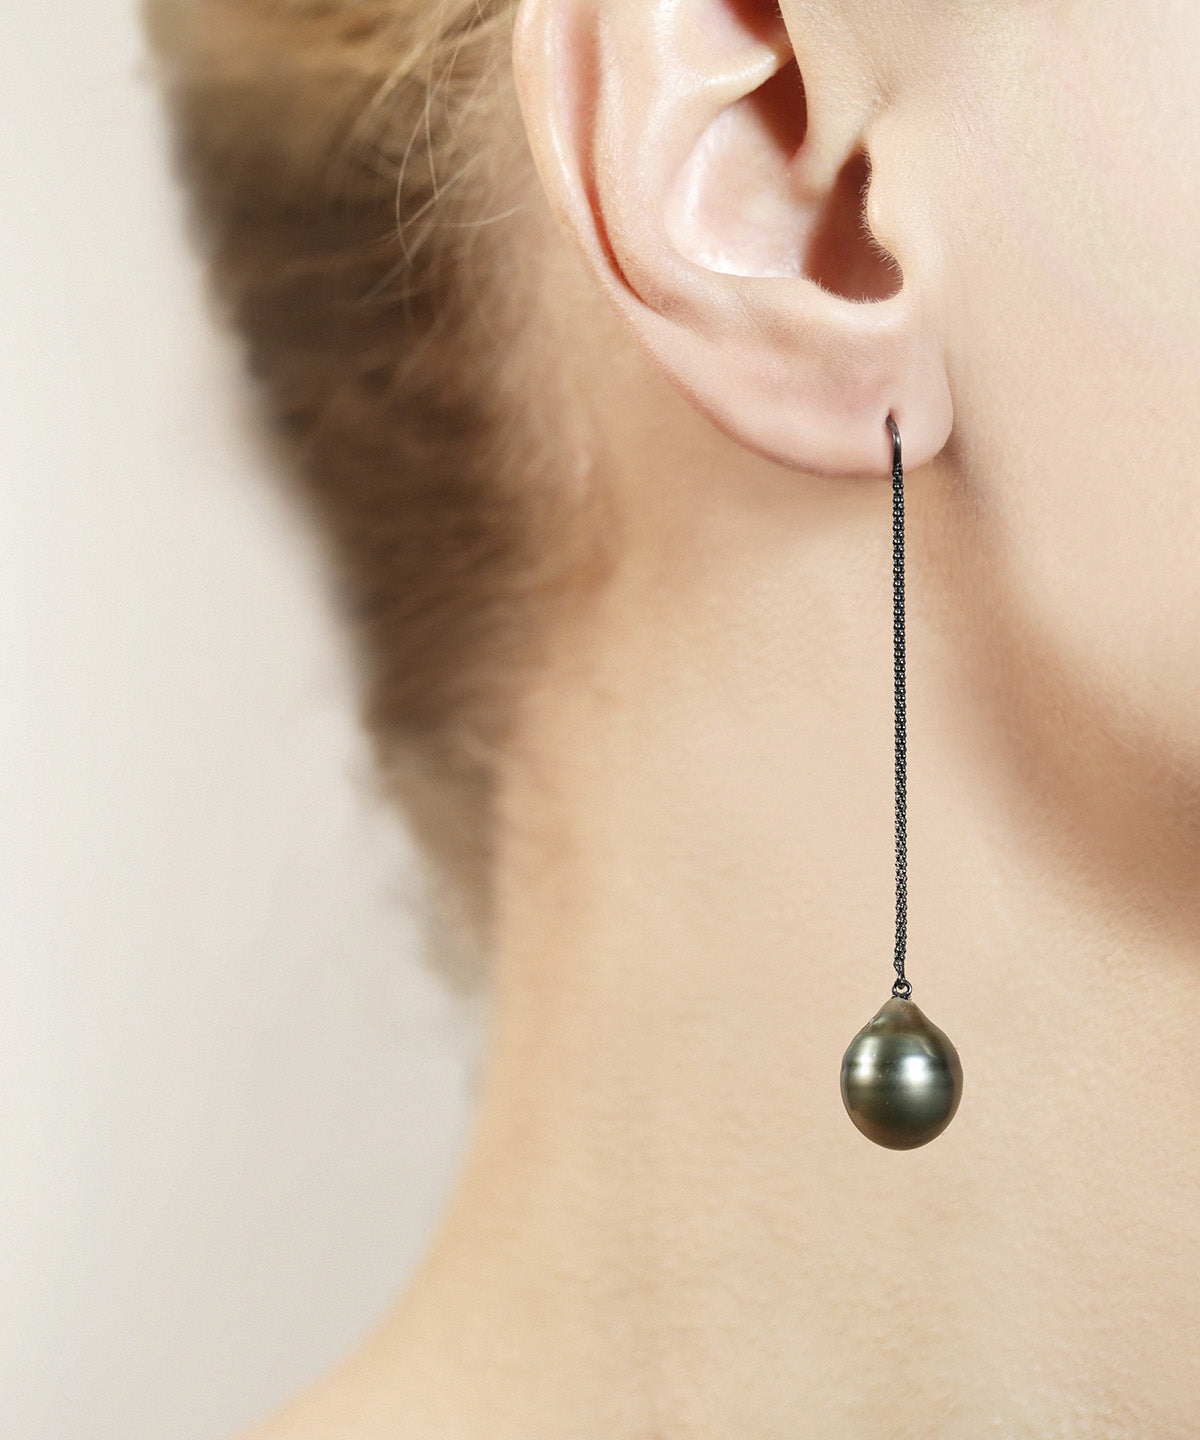 Jewelili Fresh Water Pearl Teardrop Pendant Necklace in Sterling Silver